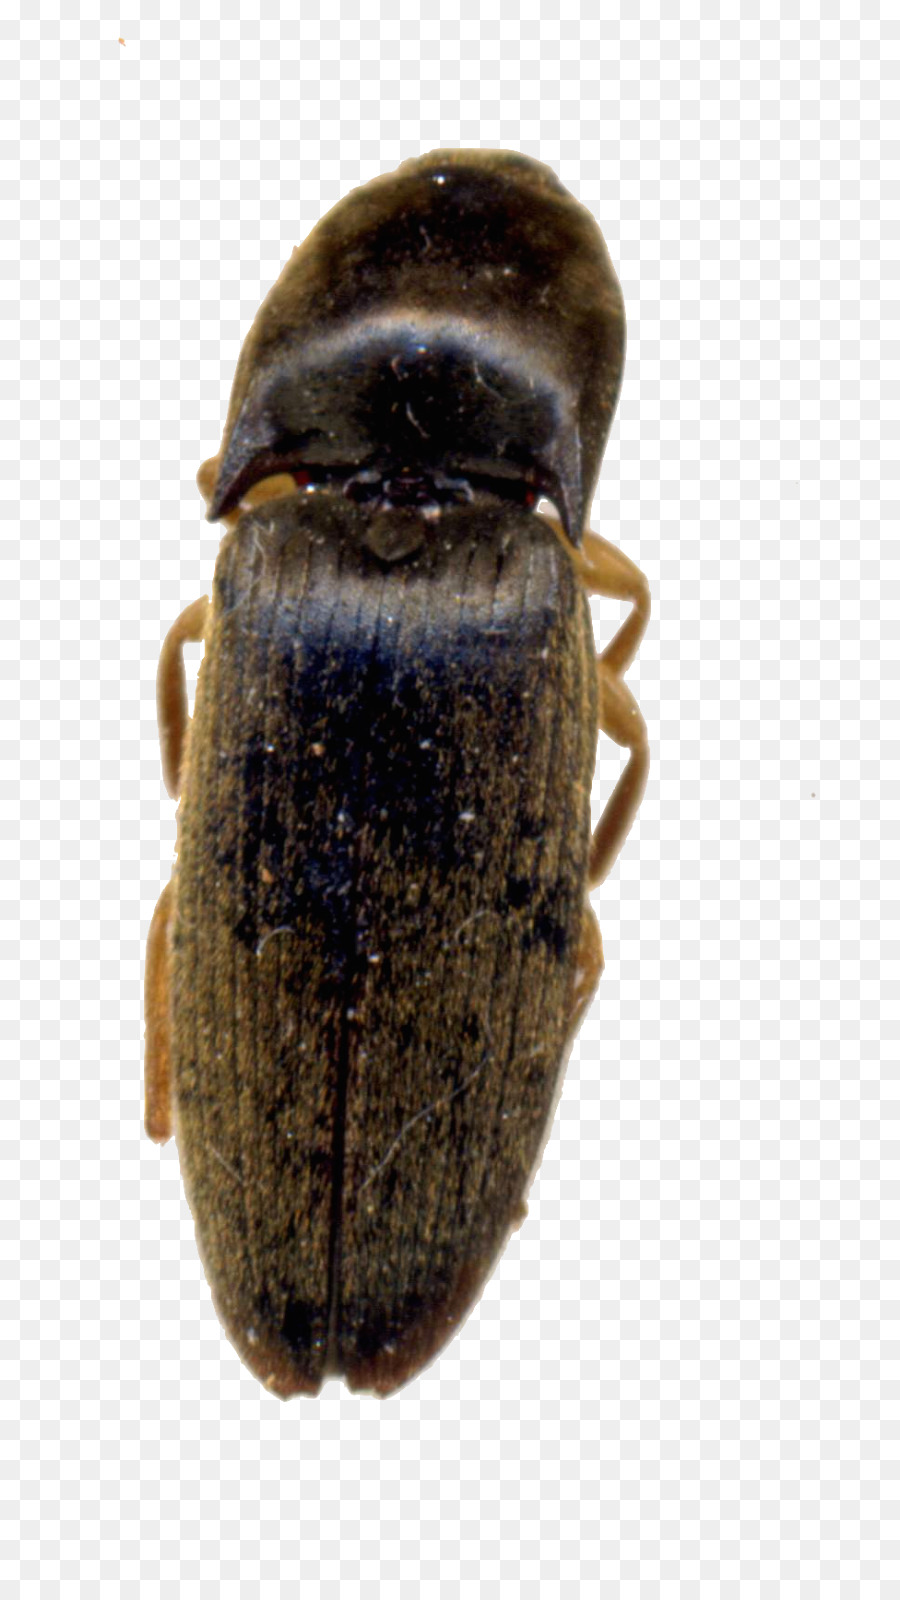 Käfer Skarabäus Terrestrischen tierischen Schädling - Biene